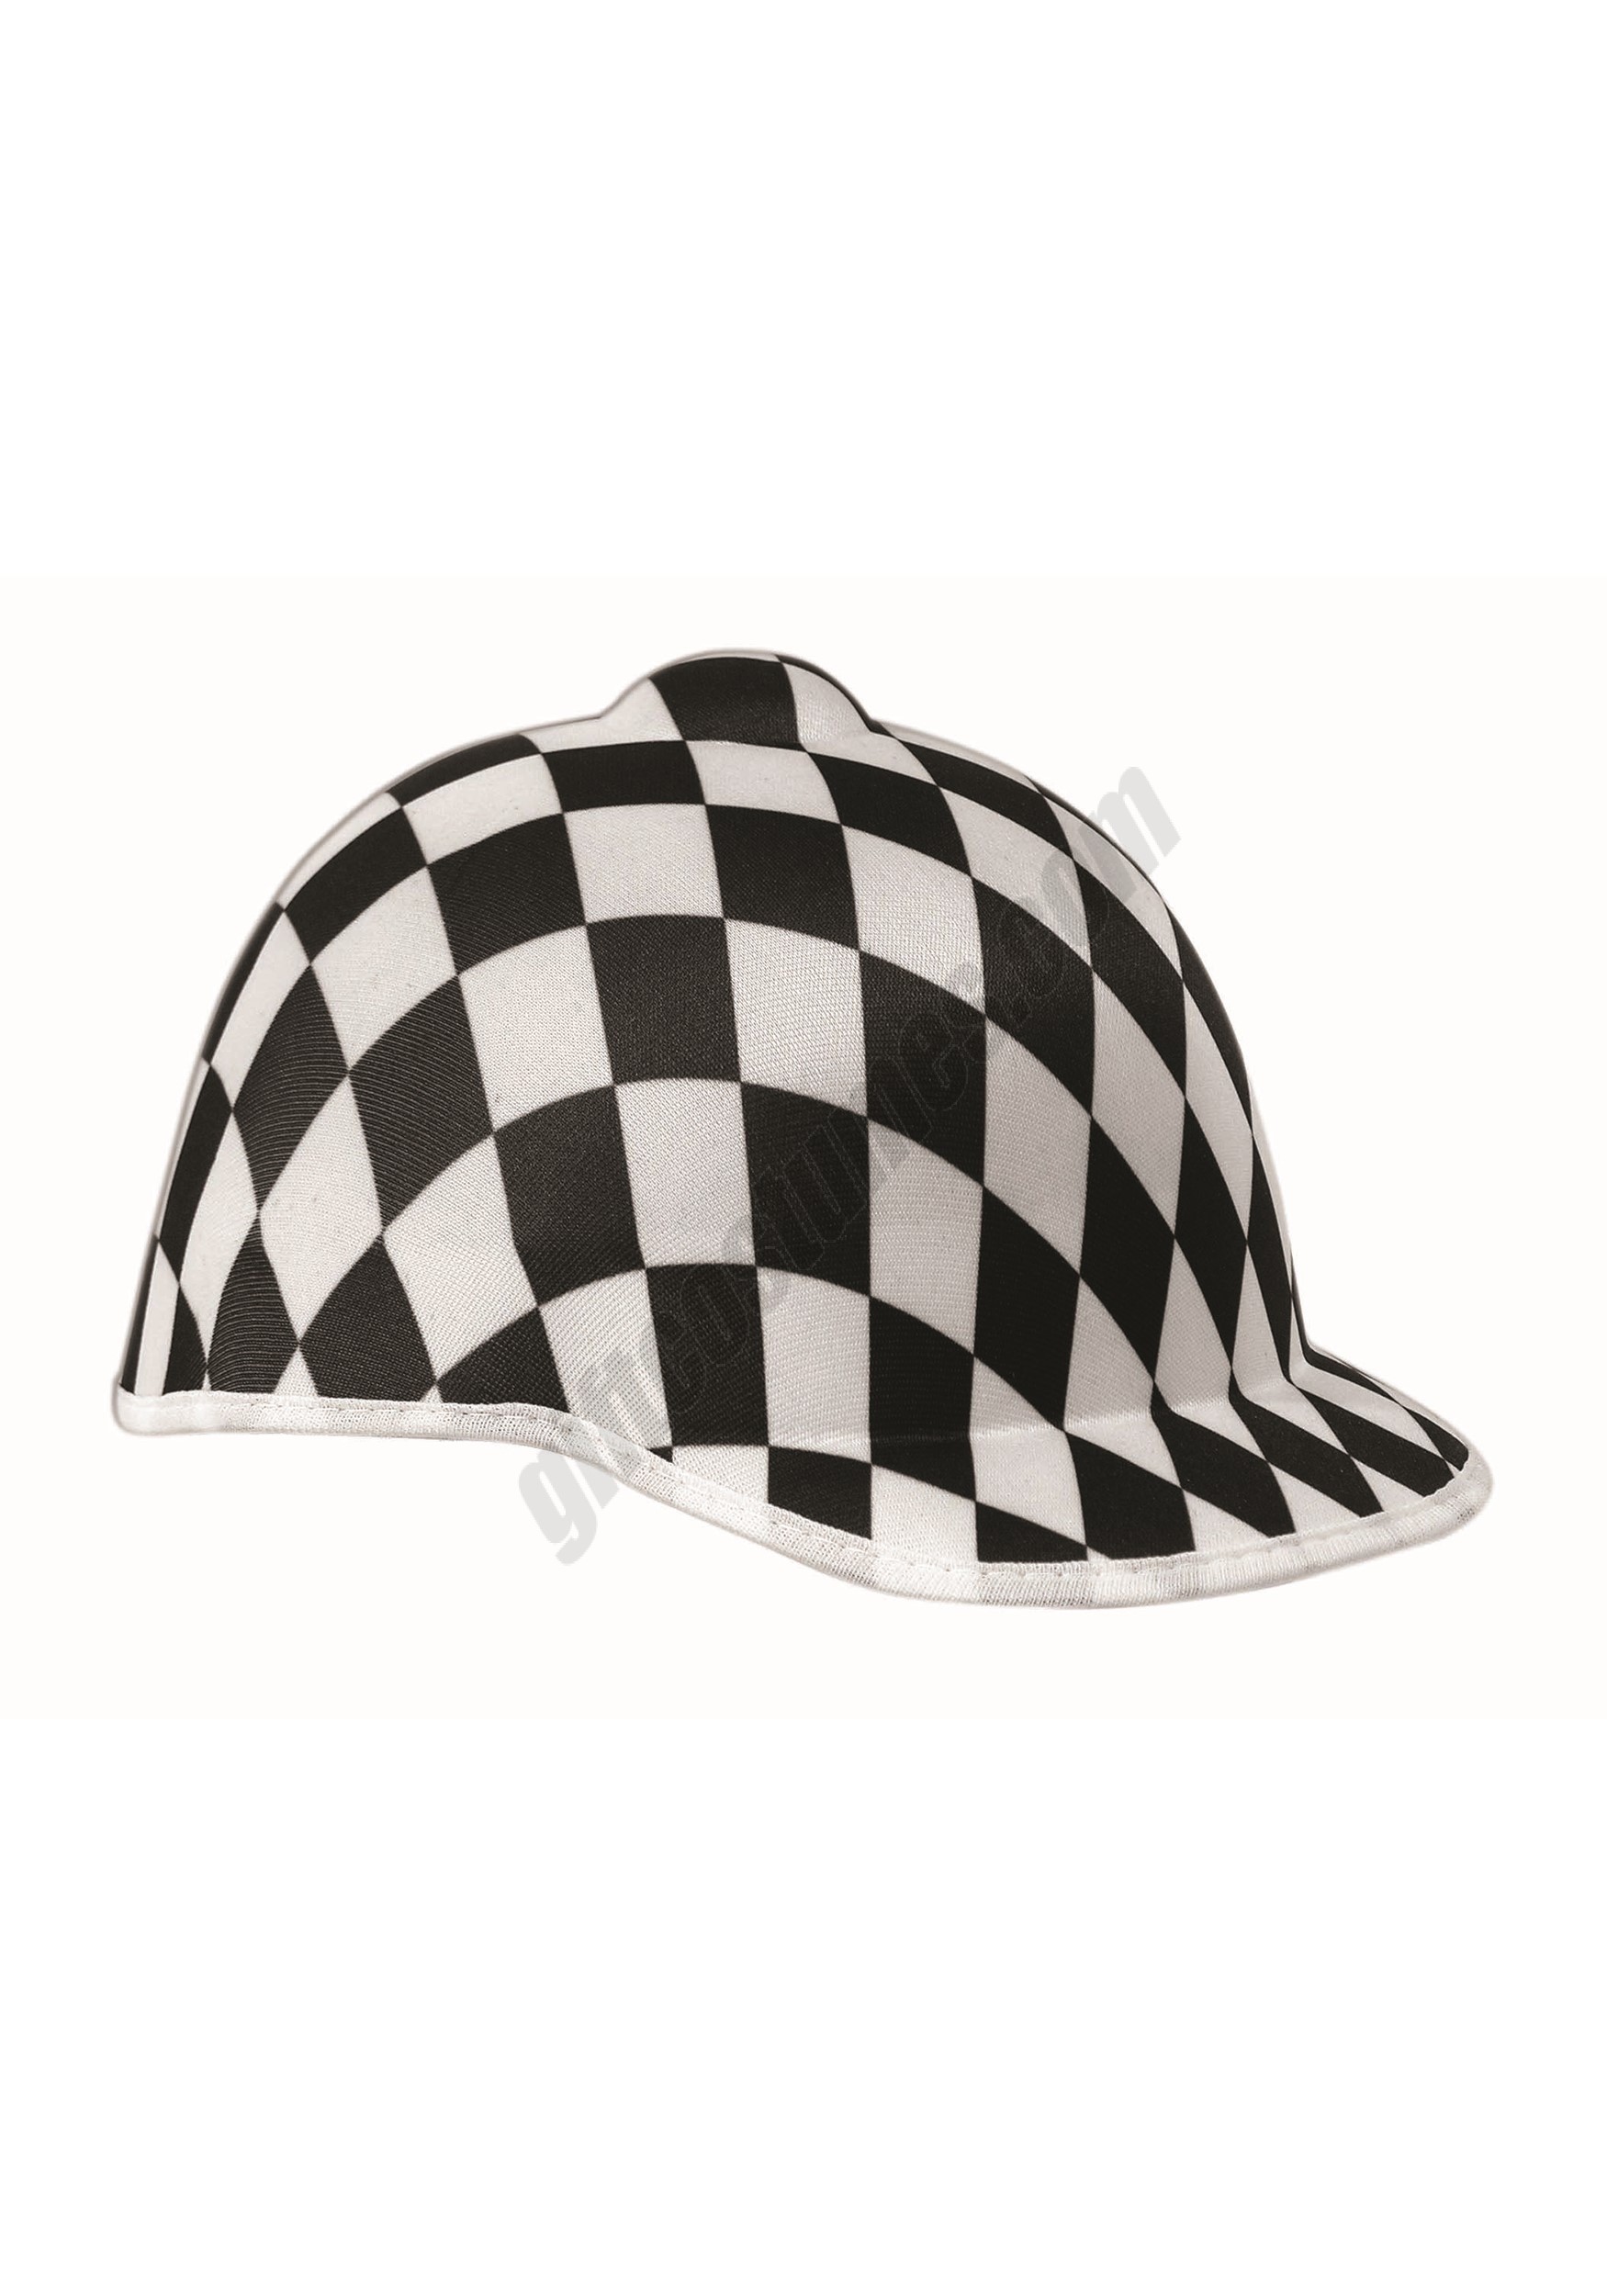 Black and White Checkered Jockey Hat Promotions - Black and White Checkered Jockey Hat Promotions